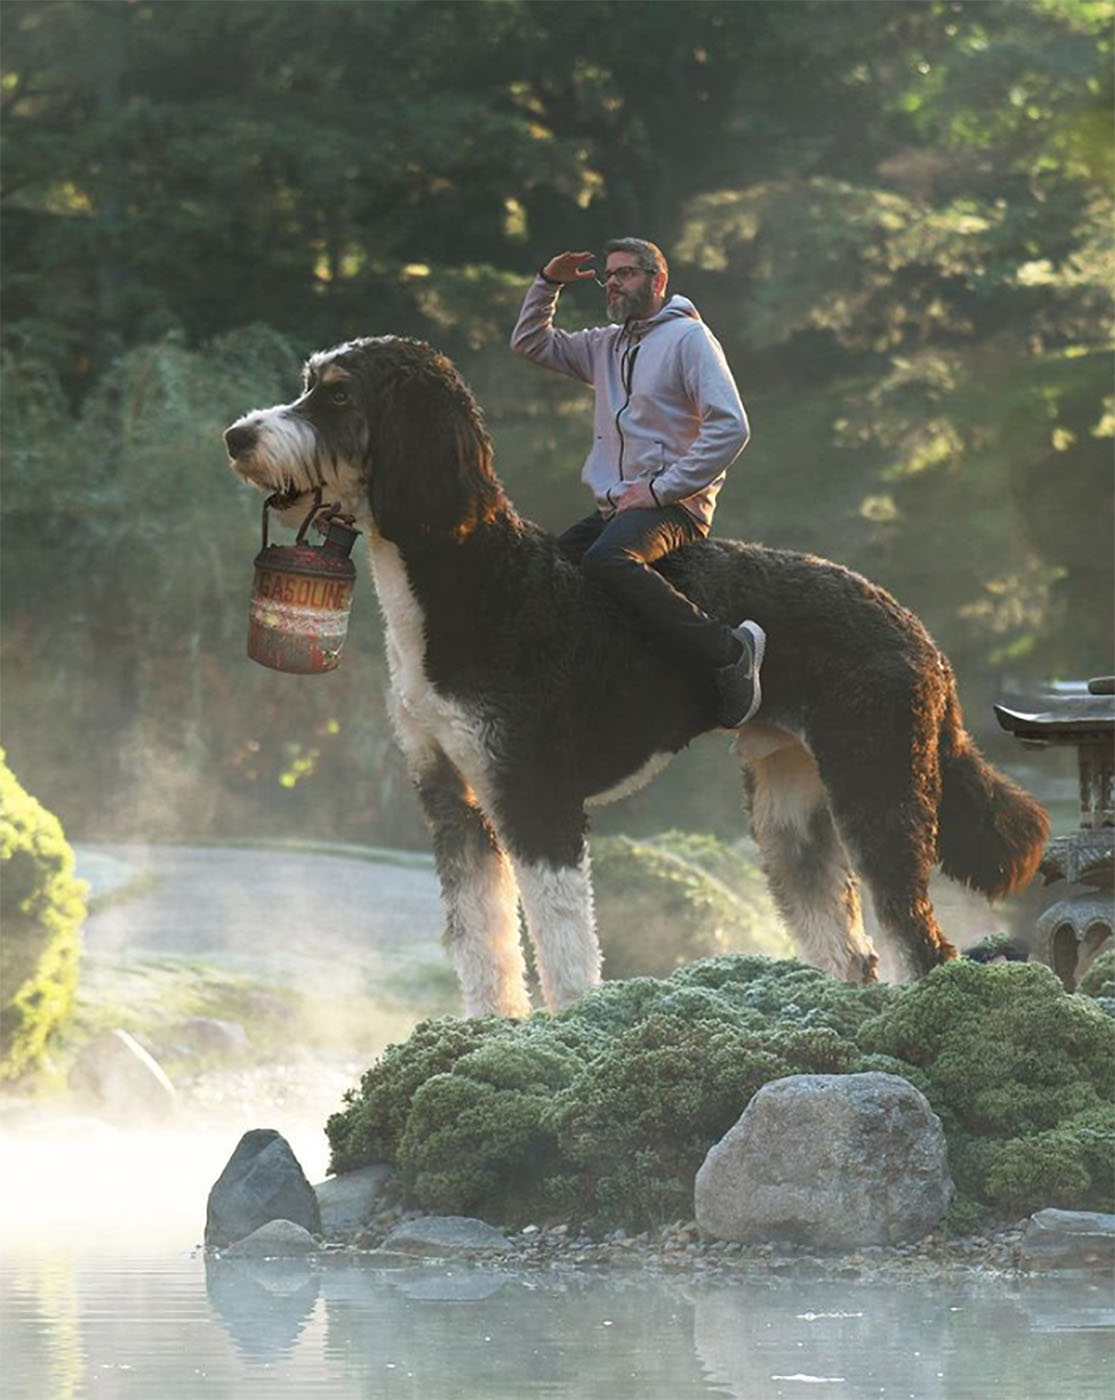 Christopher Cline procurando por algo em um lago, montando seu cachorro gigante como se fosse um cavalo